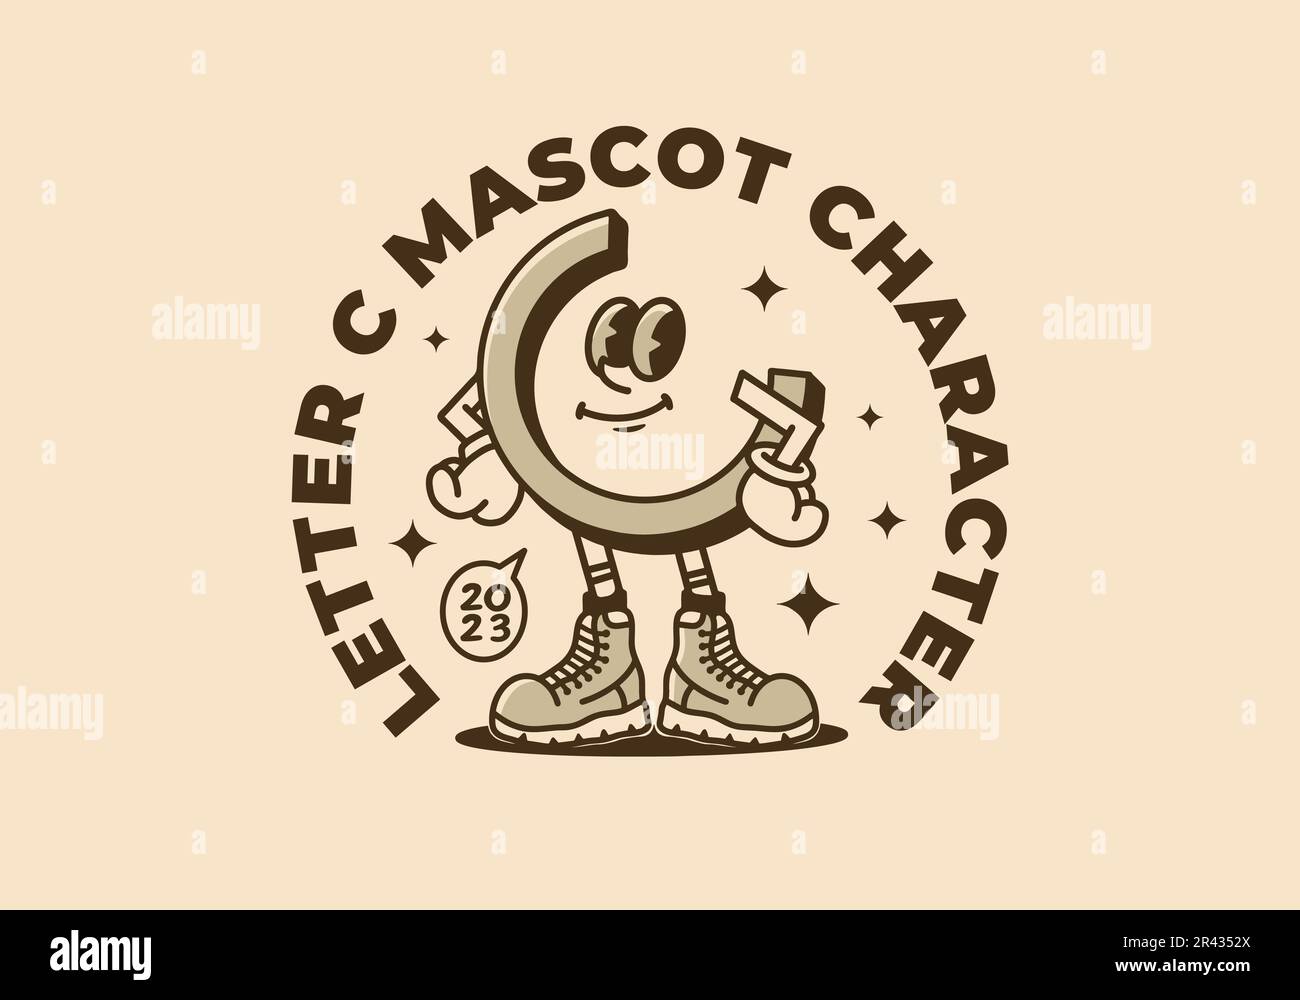 Disegno di illustrazione di carattere mascot di una lettera C in uno stile increspato Illustrazione Vettoriale